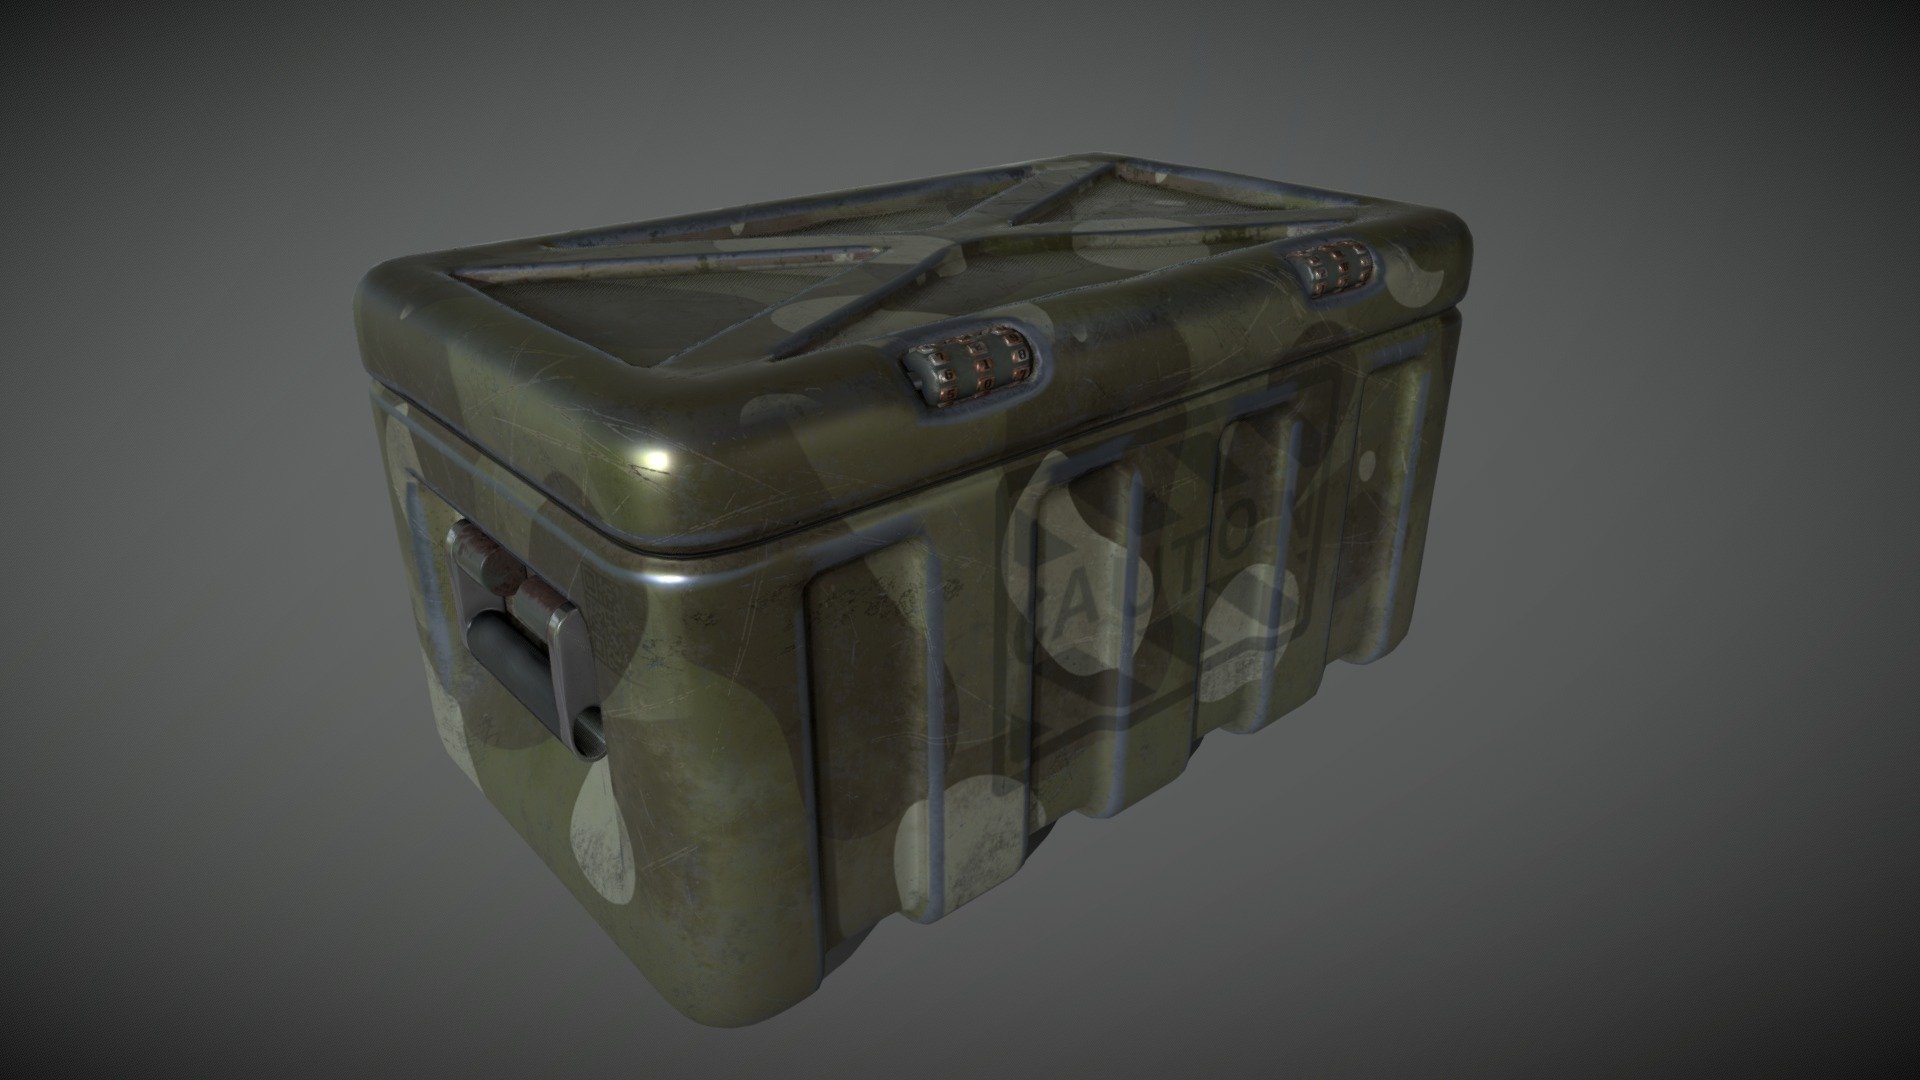 Weapon Box - Weapon box - 3D model by psyxodel 3d model